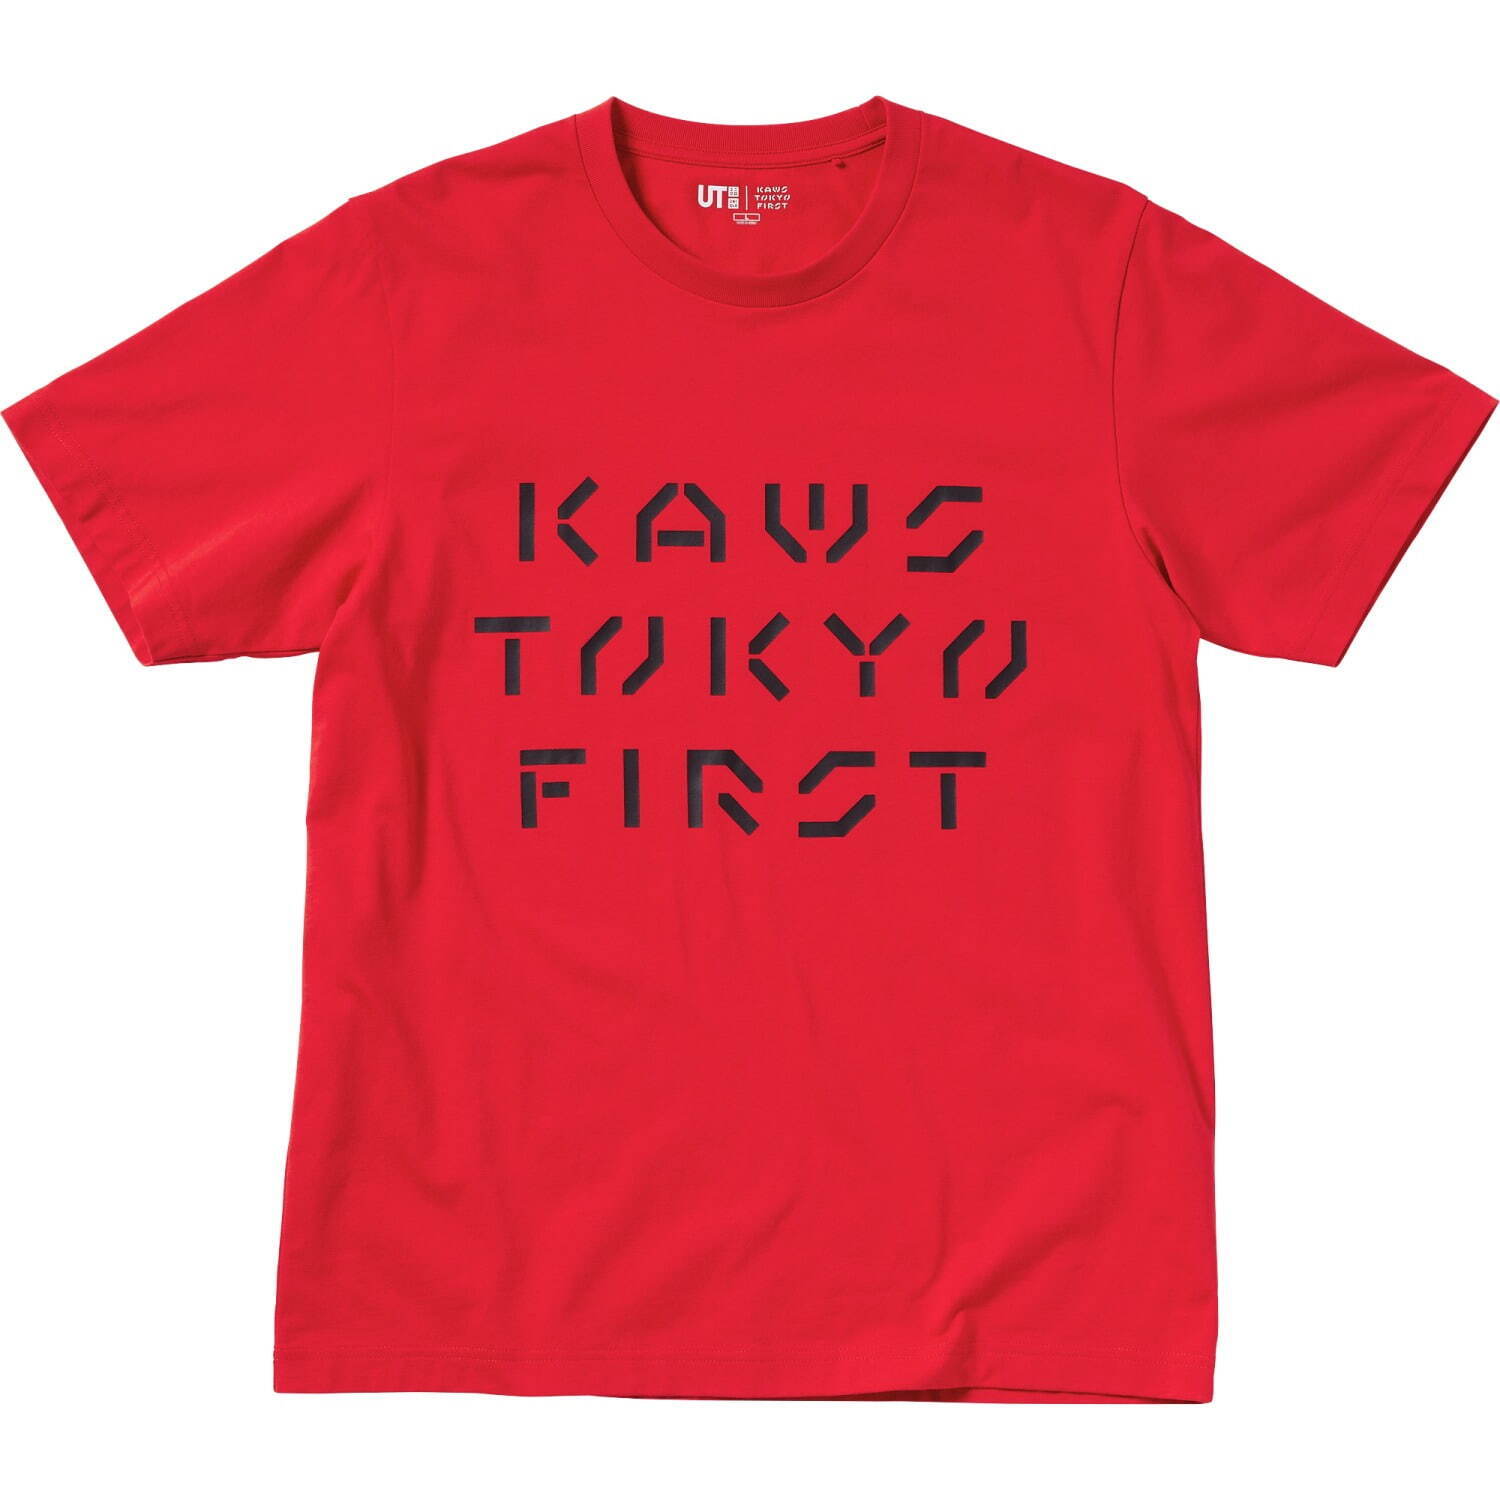 「KAWS UT」メンズ Tシャツ 1,500円
© KAWS